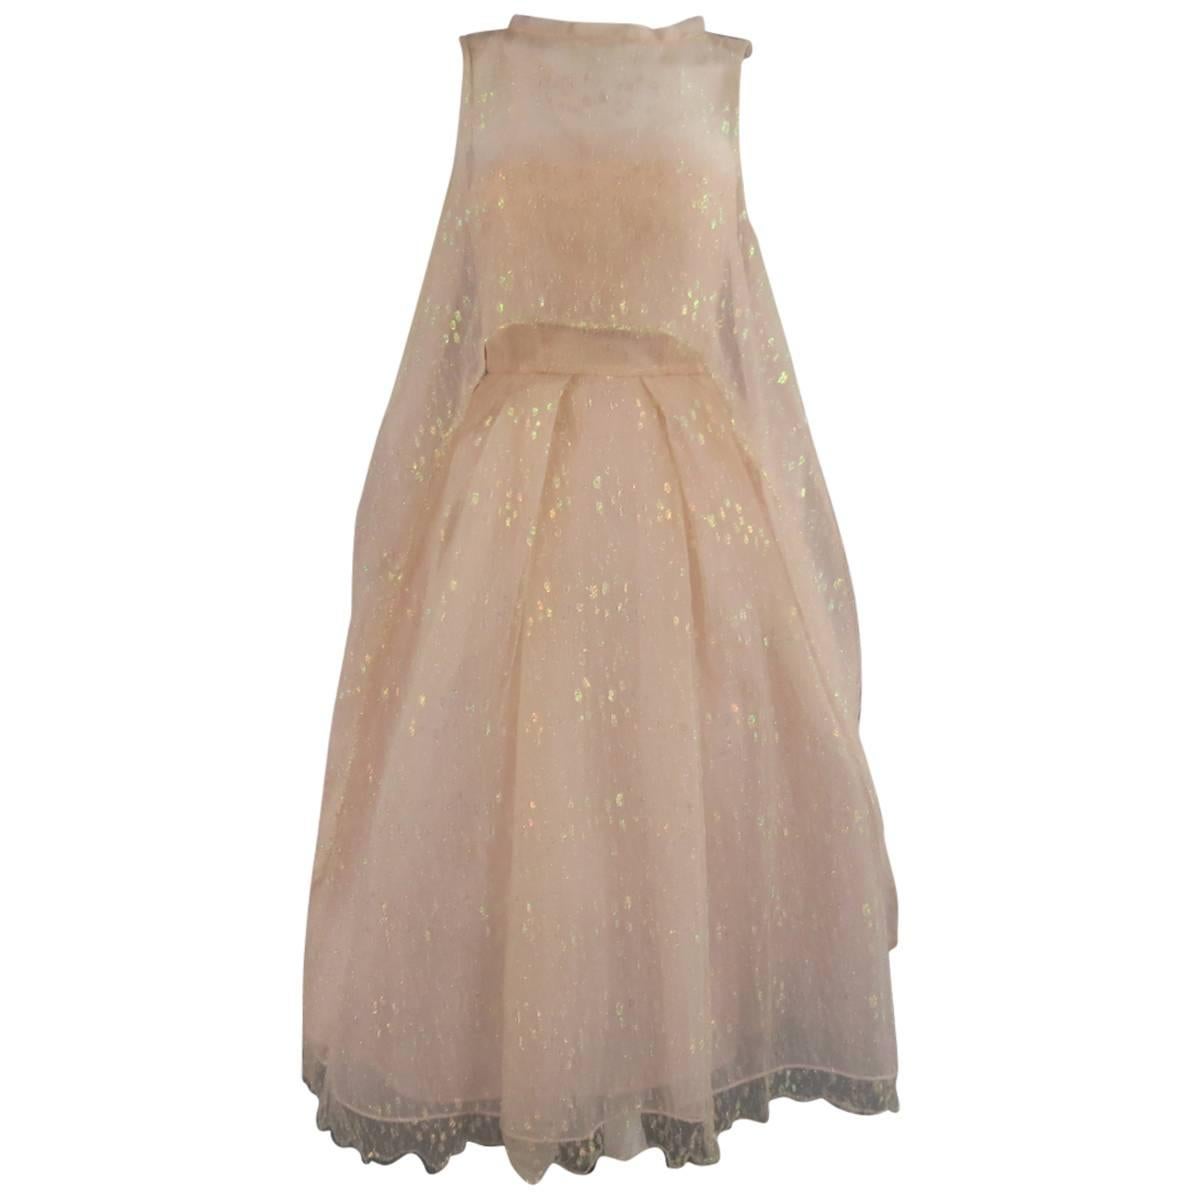 MONIQUE LHUILLIER Size 4 Pink Iridescent Lace Strapless Two Piece Cape Dress